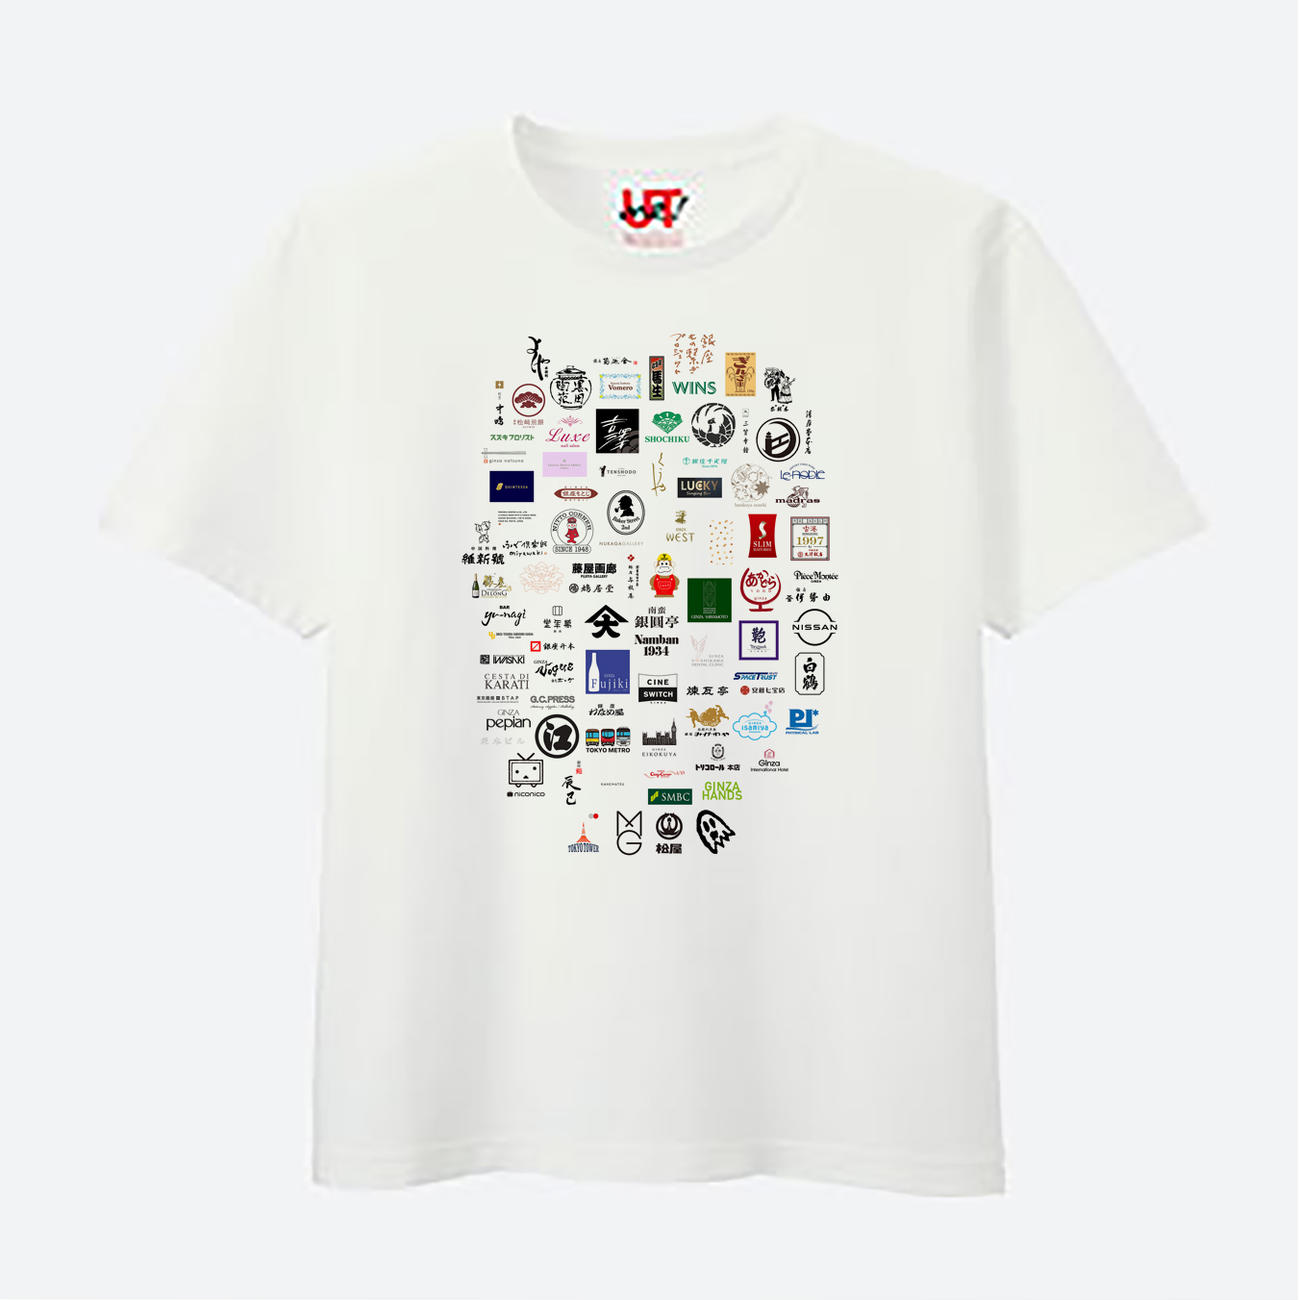 14日からユニクロTOKYO店で販売される東京・銀座の「もの繋ぎプロジェクト」のオリジナルチャリティーTシャツ（画像はイメージ）